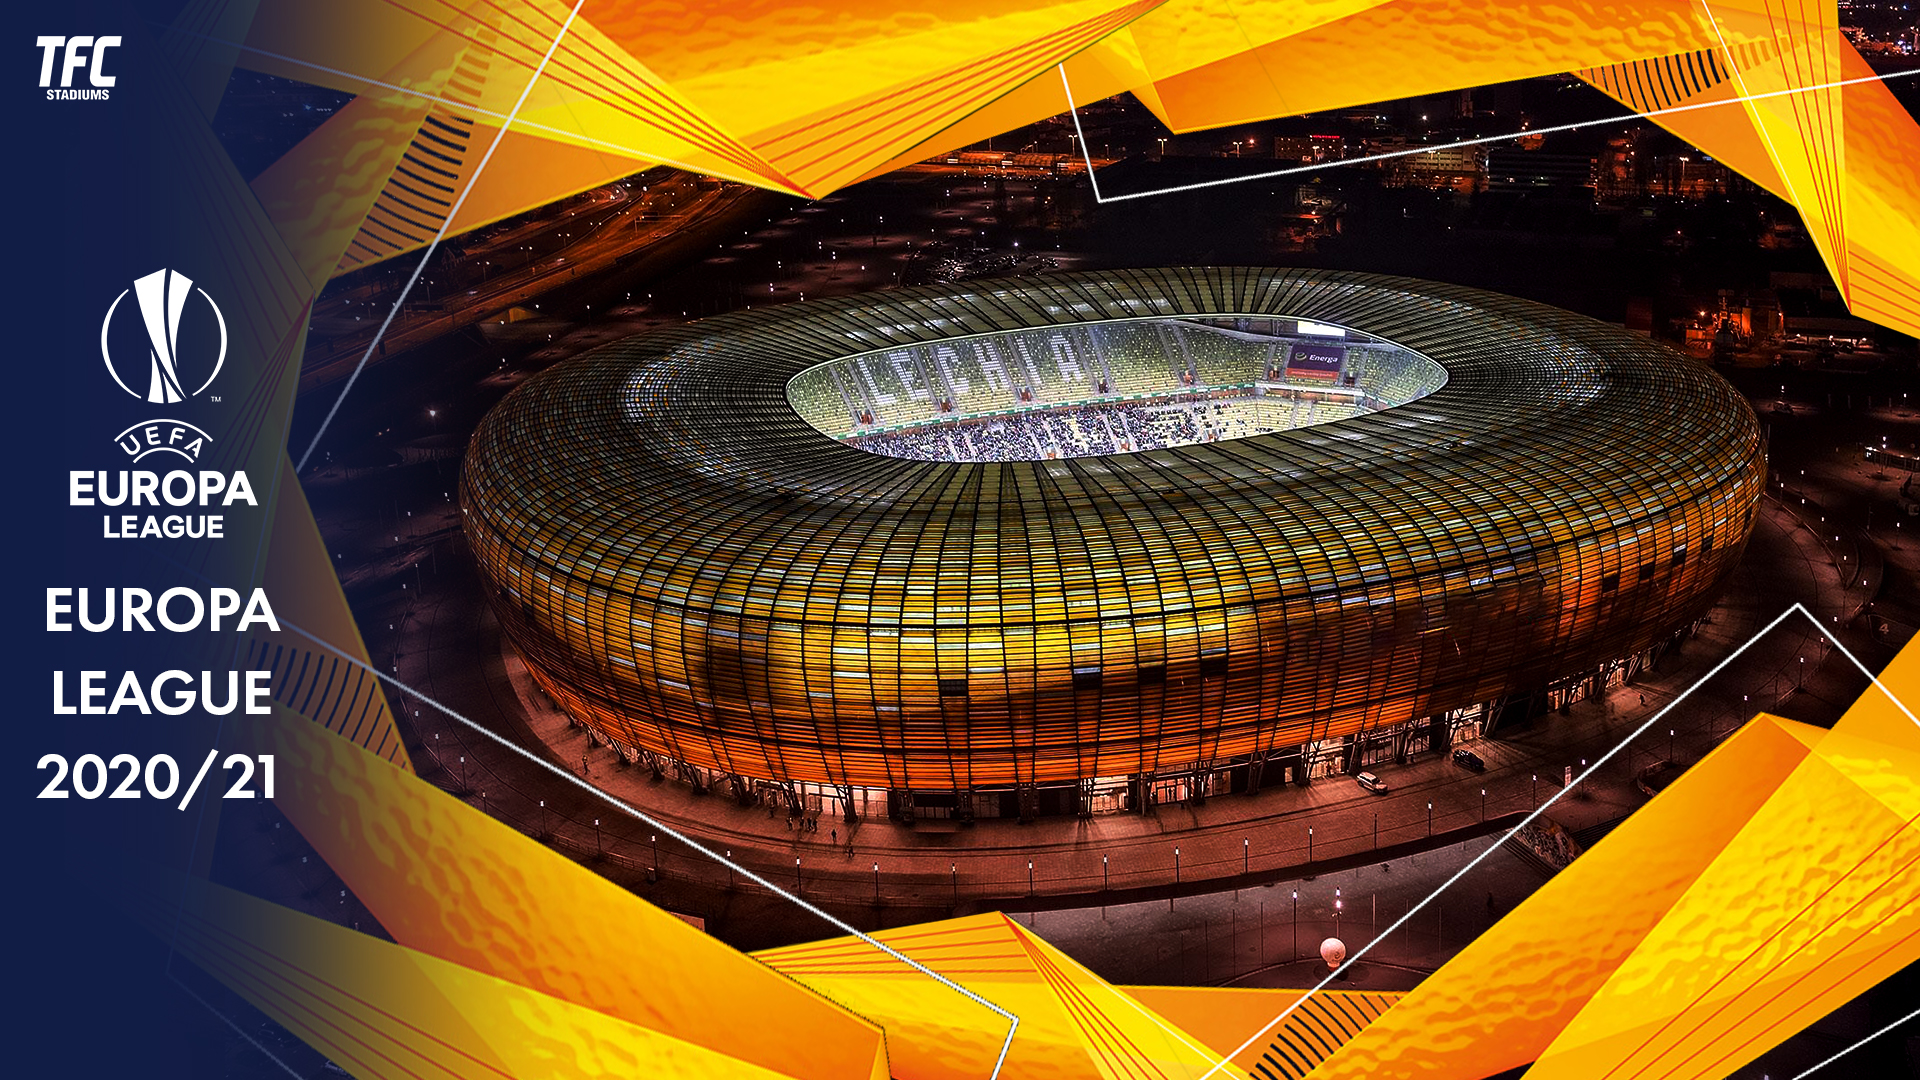 UEFA Europa League 2020/21 Stadiums TFC Stadiums